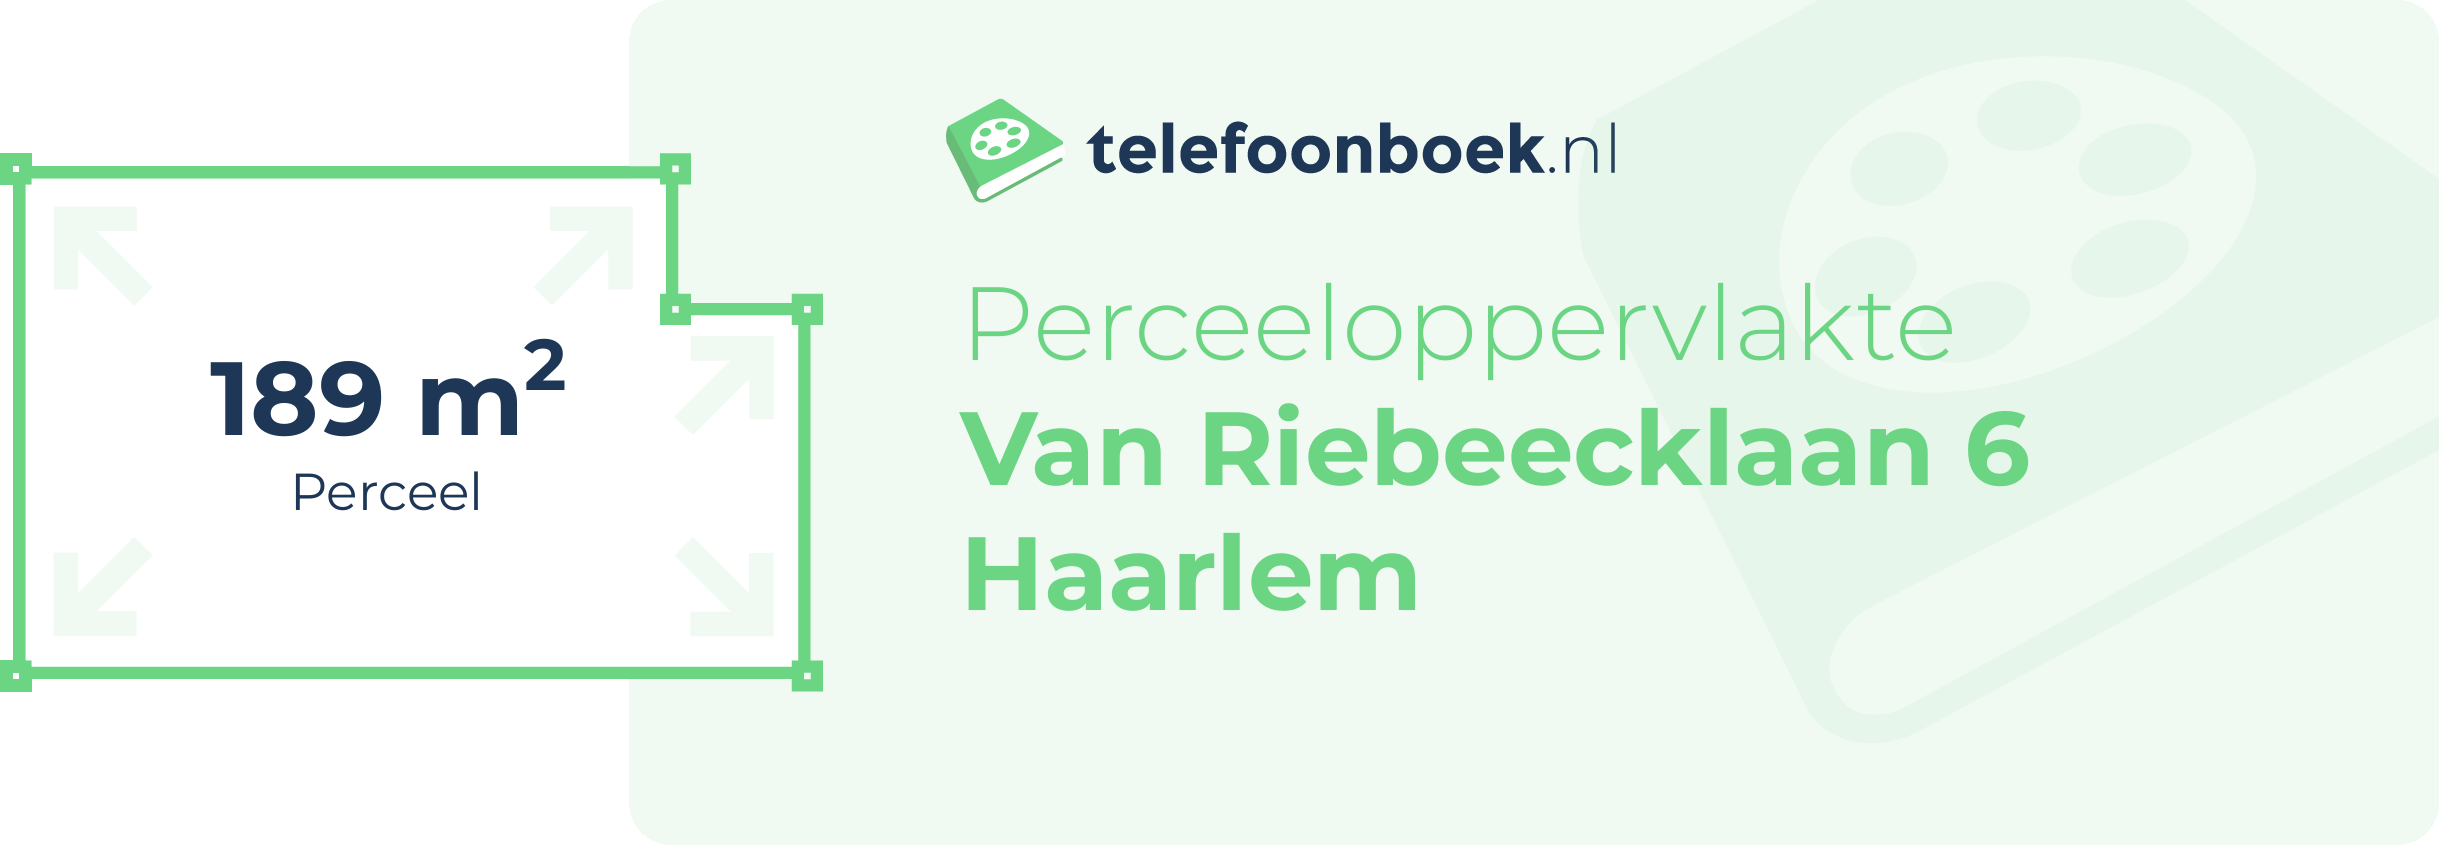 Perceeloppervlakte Van Riebeecklaan 6 Haarlem